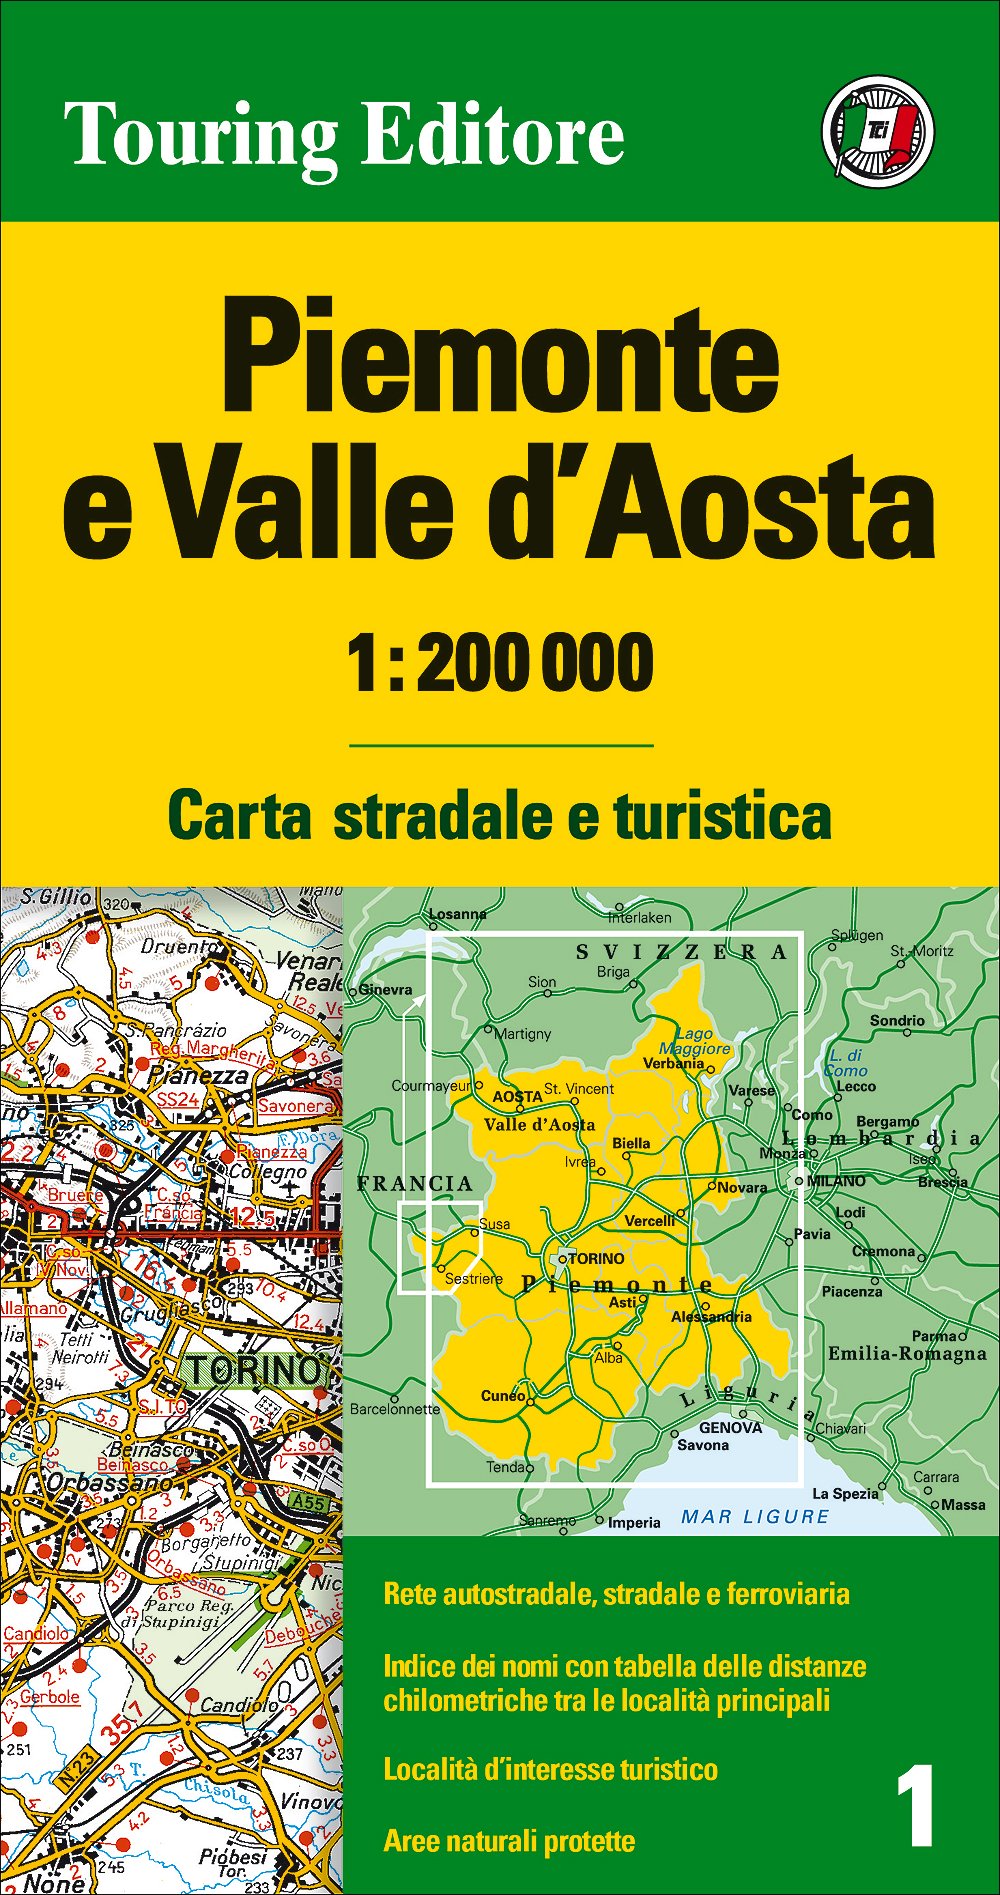 Online bestellen: Fietskaart - Wegenkaart - landkaart 01 Piemont - Piemonte Valle d'Aosta | Touring Club Italiano